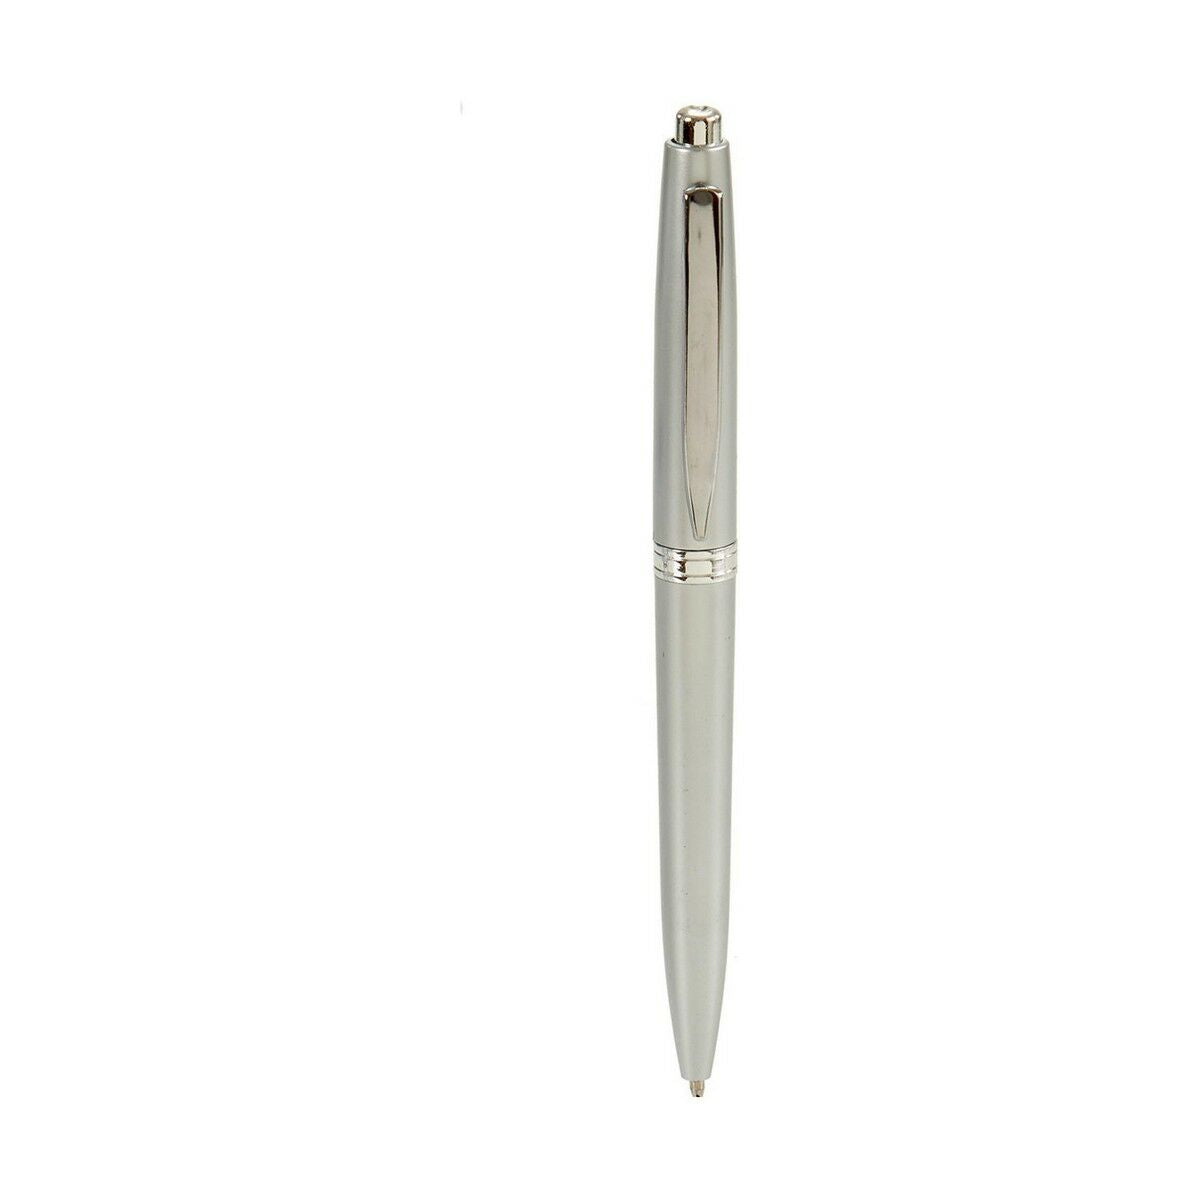 Pennset 0,5 mm Silvrig (12 antal)-Kontor och Kontorsmaterial, Kulspetspennor, pennor och skrivverktyg-Pincello-peaceofhome.se